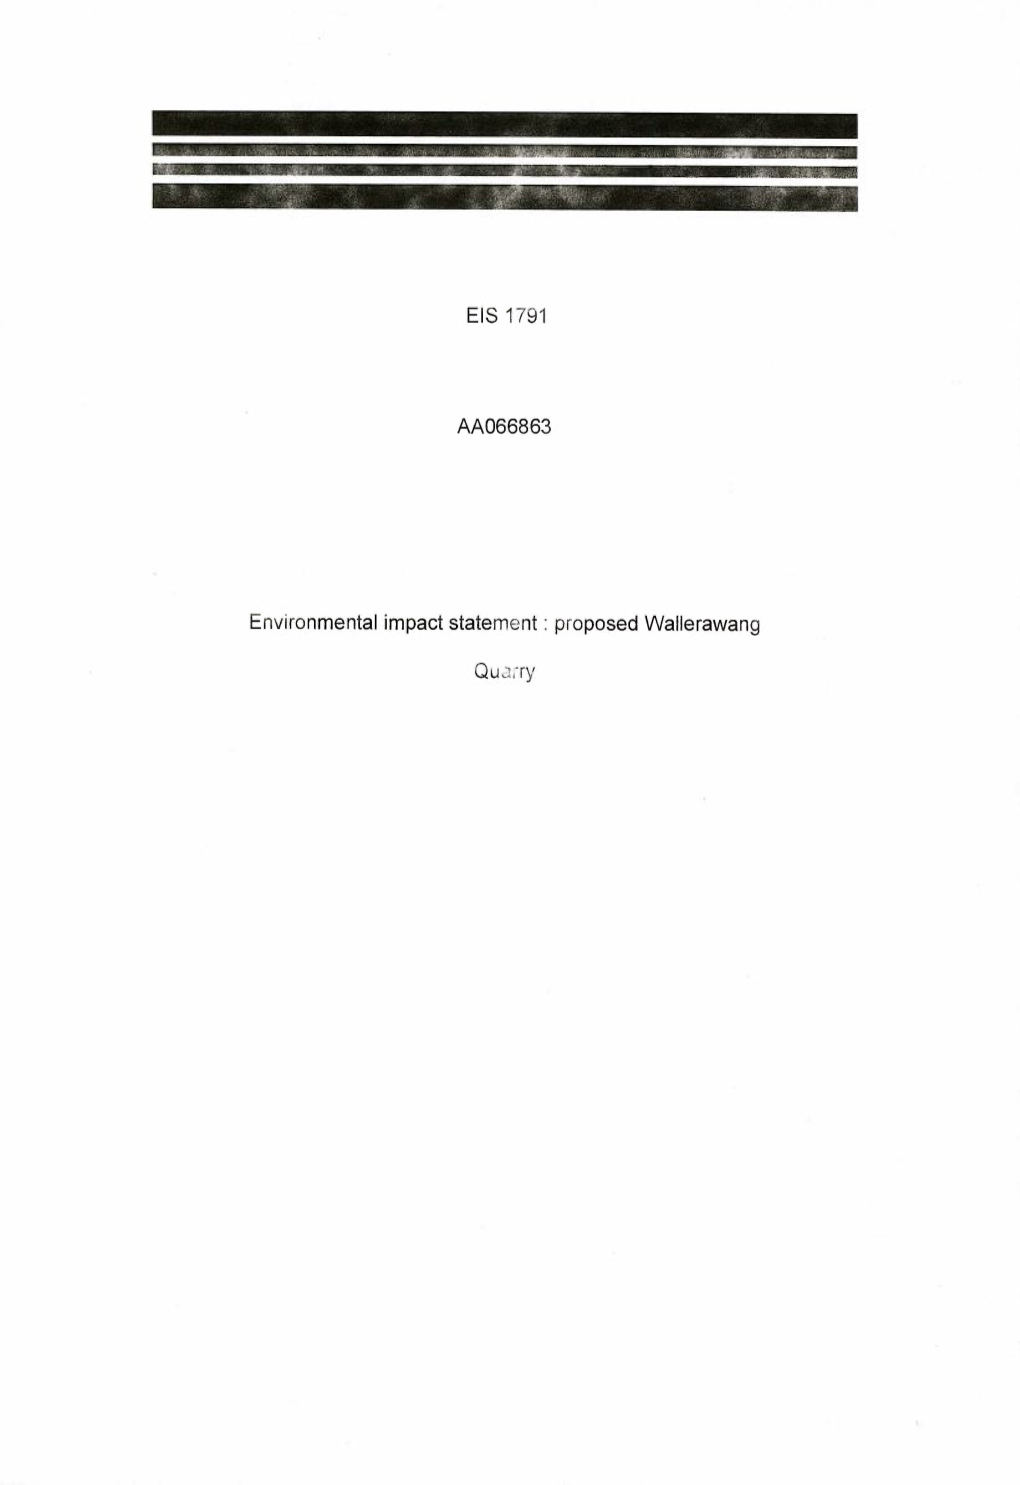 EIS 1791 Environmental Impact Statement: Proposed Wallerawang